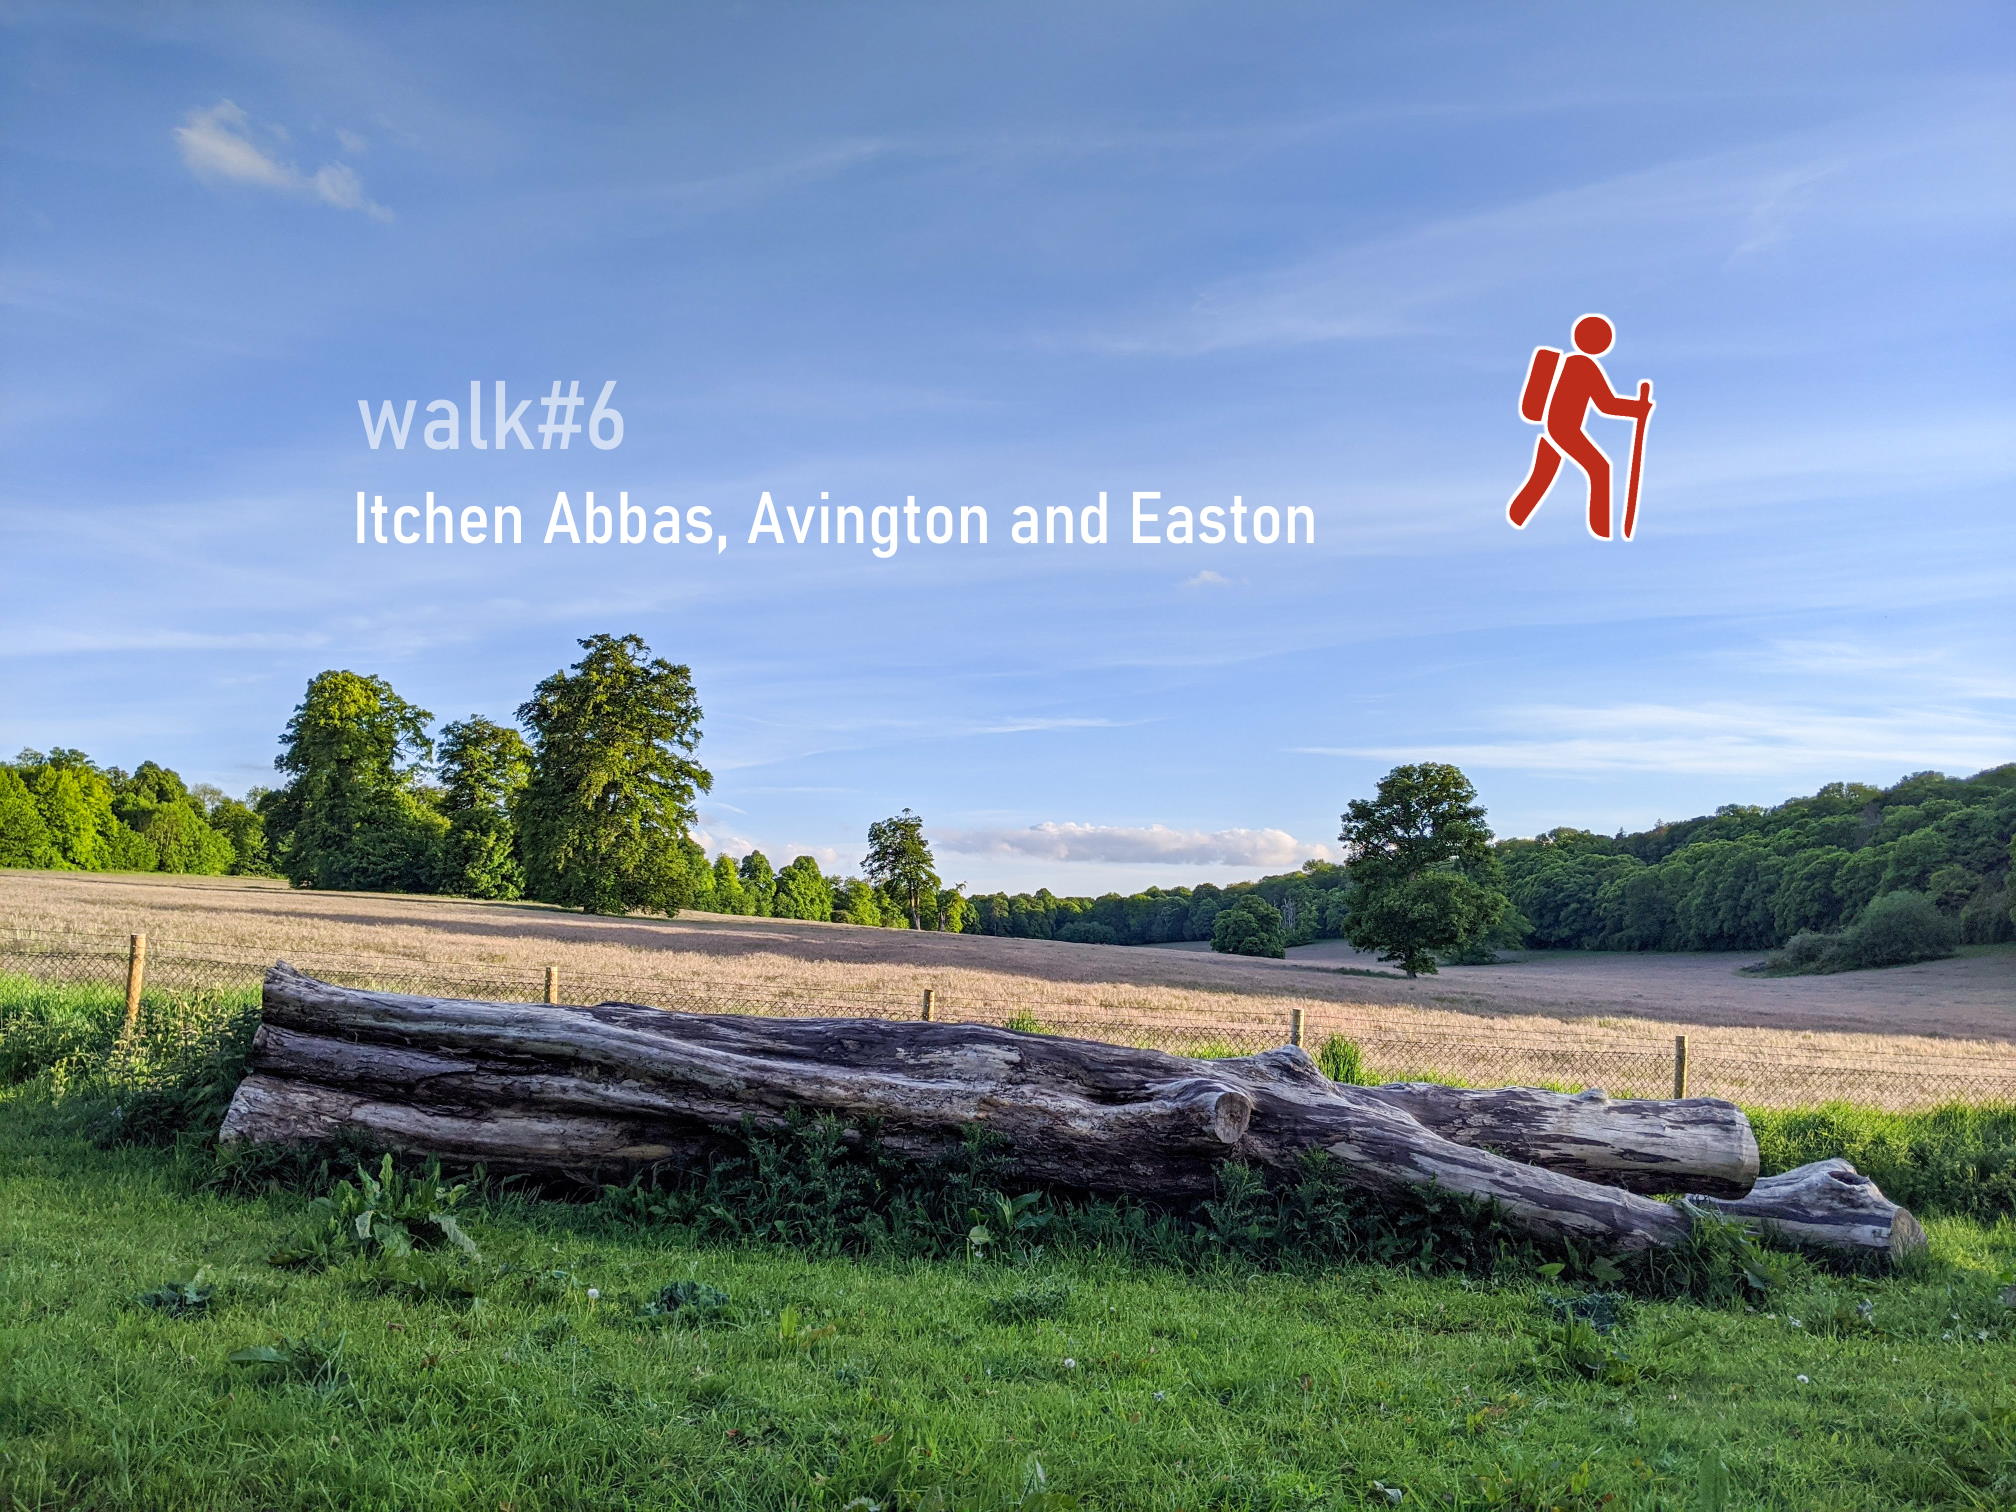 walk6 - Itchen Abbas, Avington and Easton